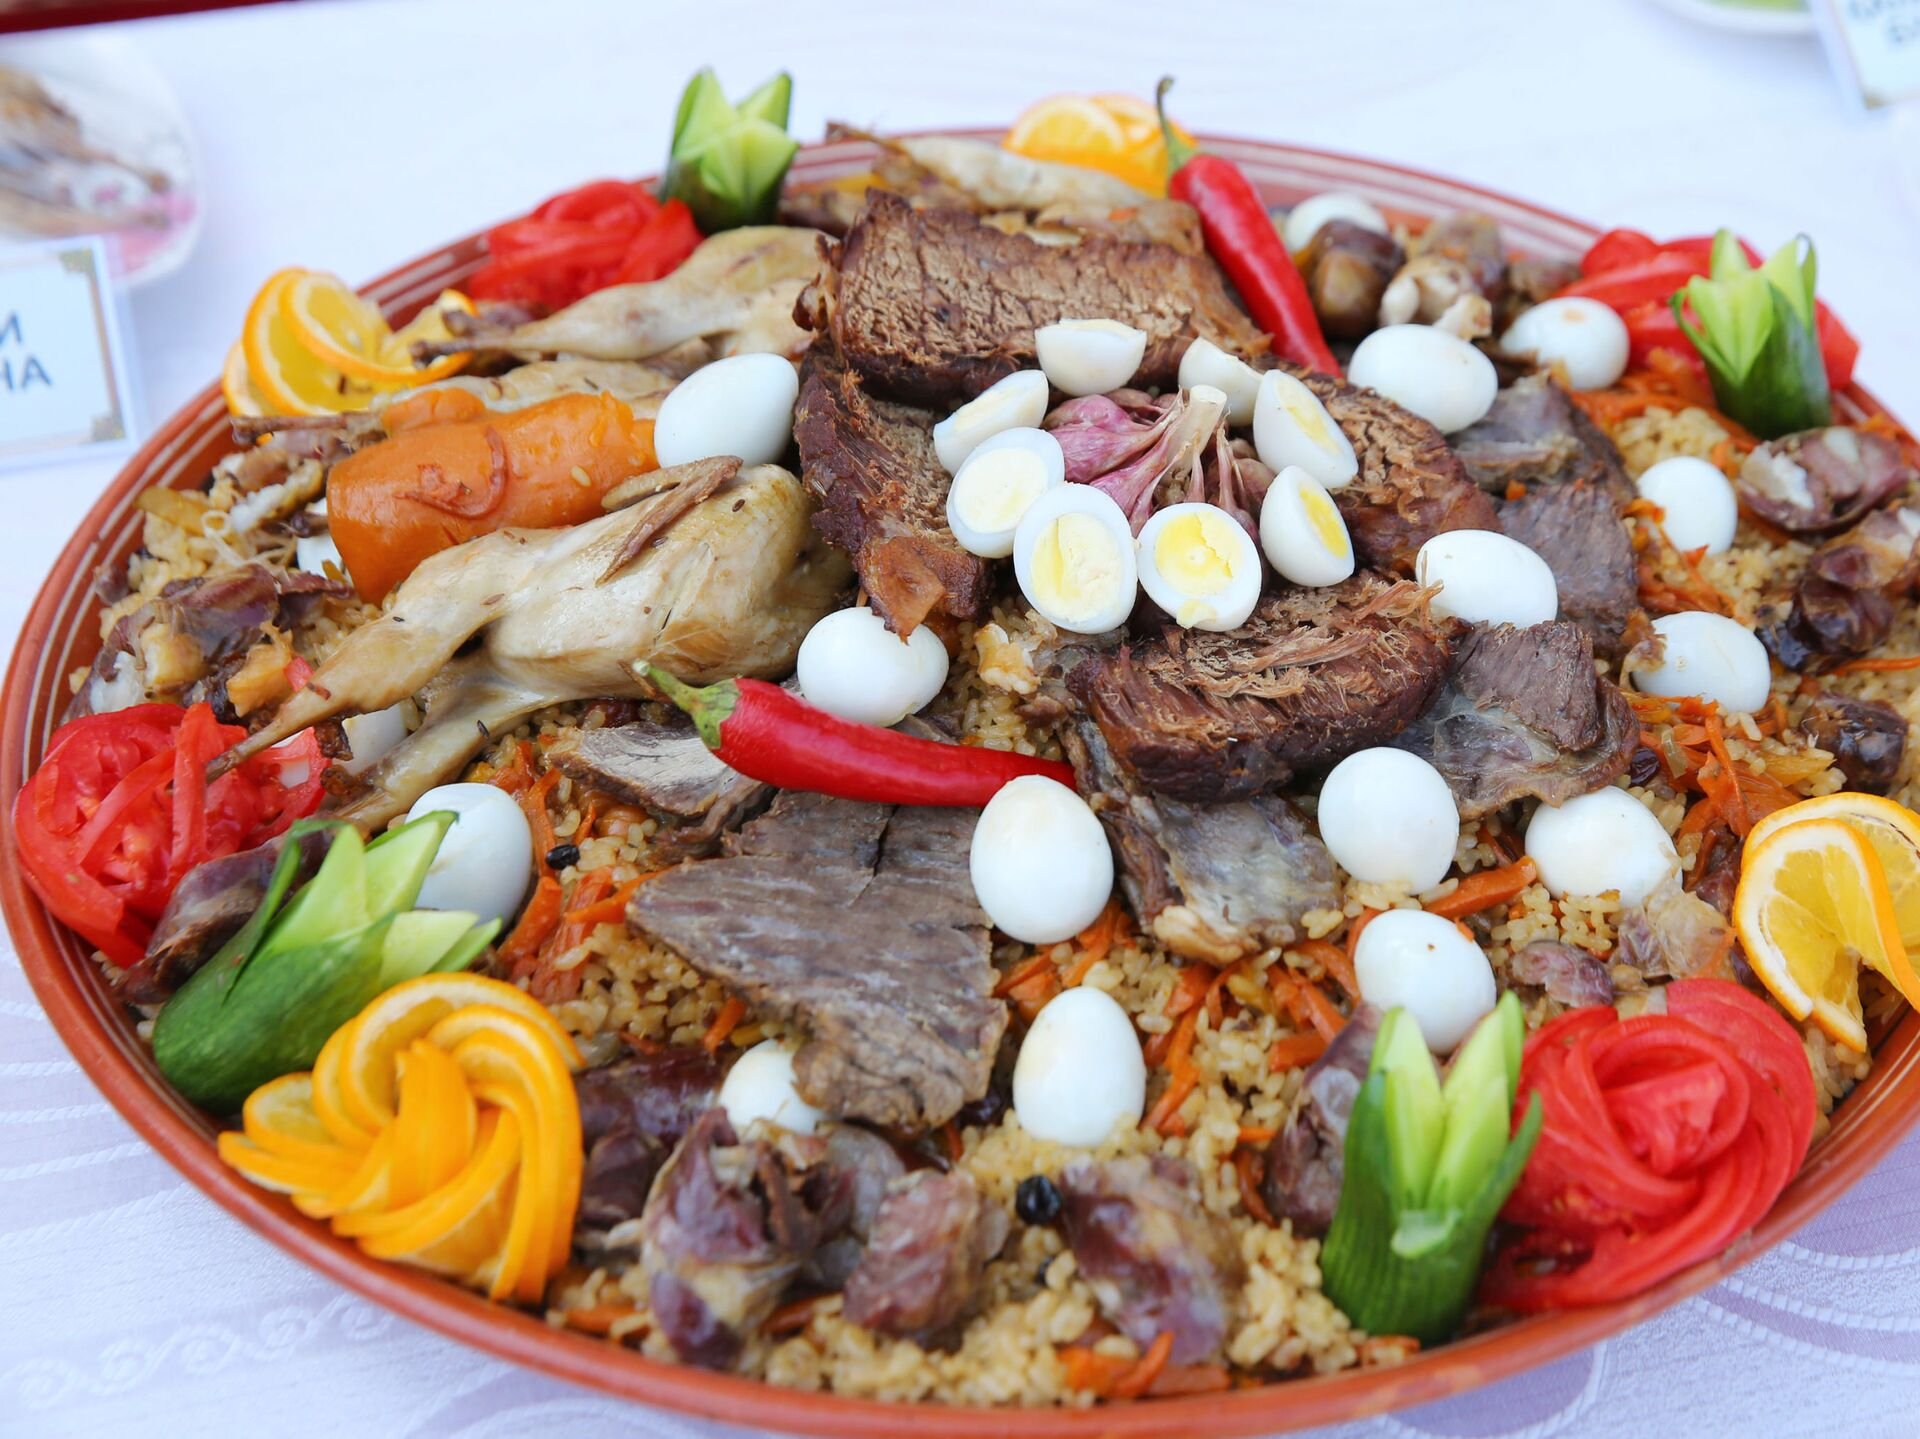 Таджикские блюда фото. Нац блюда Таджикистана. Худжандский плов. УГРО-плов (таджикская кухня). Национальное блюдо таджиков.